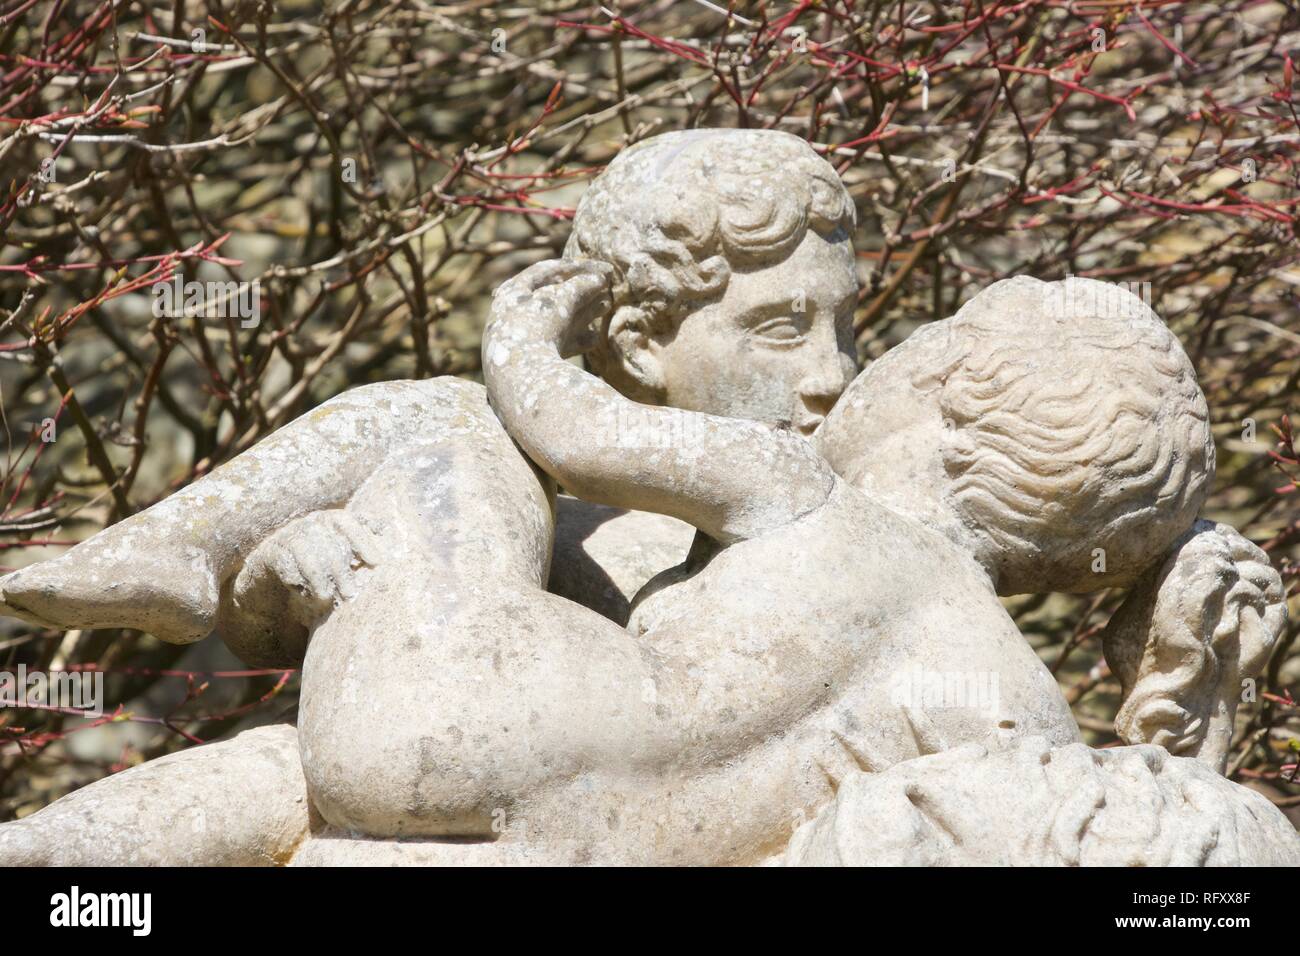 Eine im Freien, steinerne Statue von zwei Jungen zu küssen. Es könnte Platonisch sein, aber es könnte auch schwul sein - ein Junge hat seine Hand auf der anderen Gesäß Stockfoto